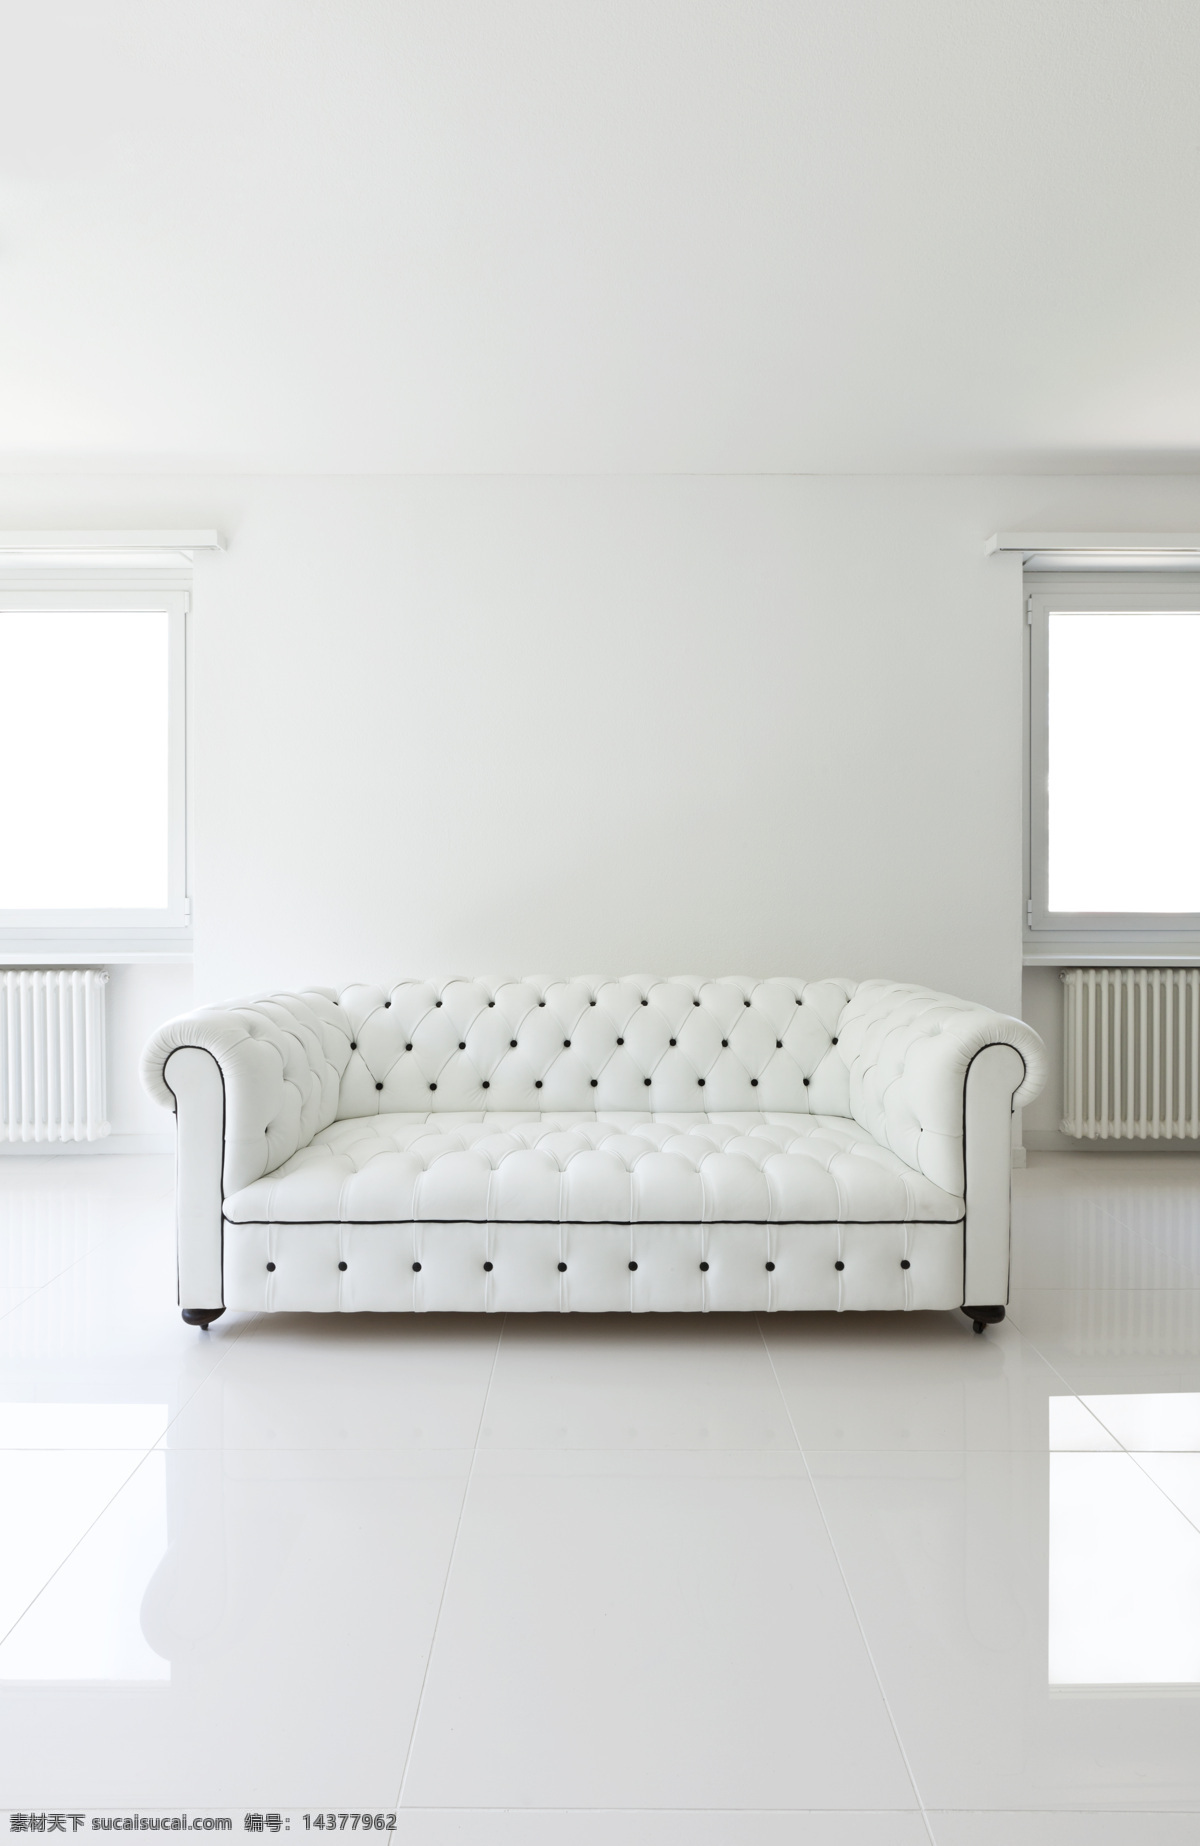 白色 欧式 沙发 椅子 白色沙发 欧式沙发 家具 家装用品 室内设计 环境家居